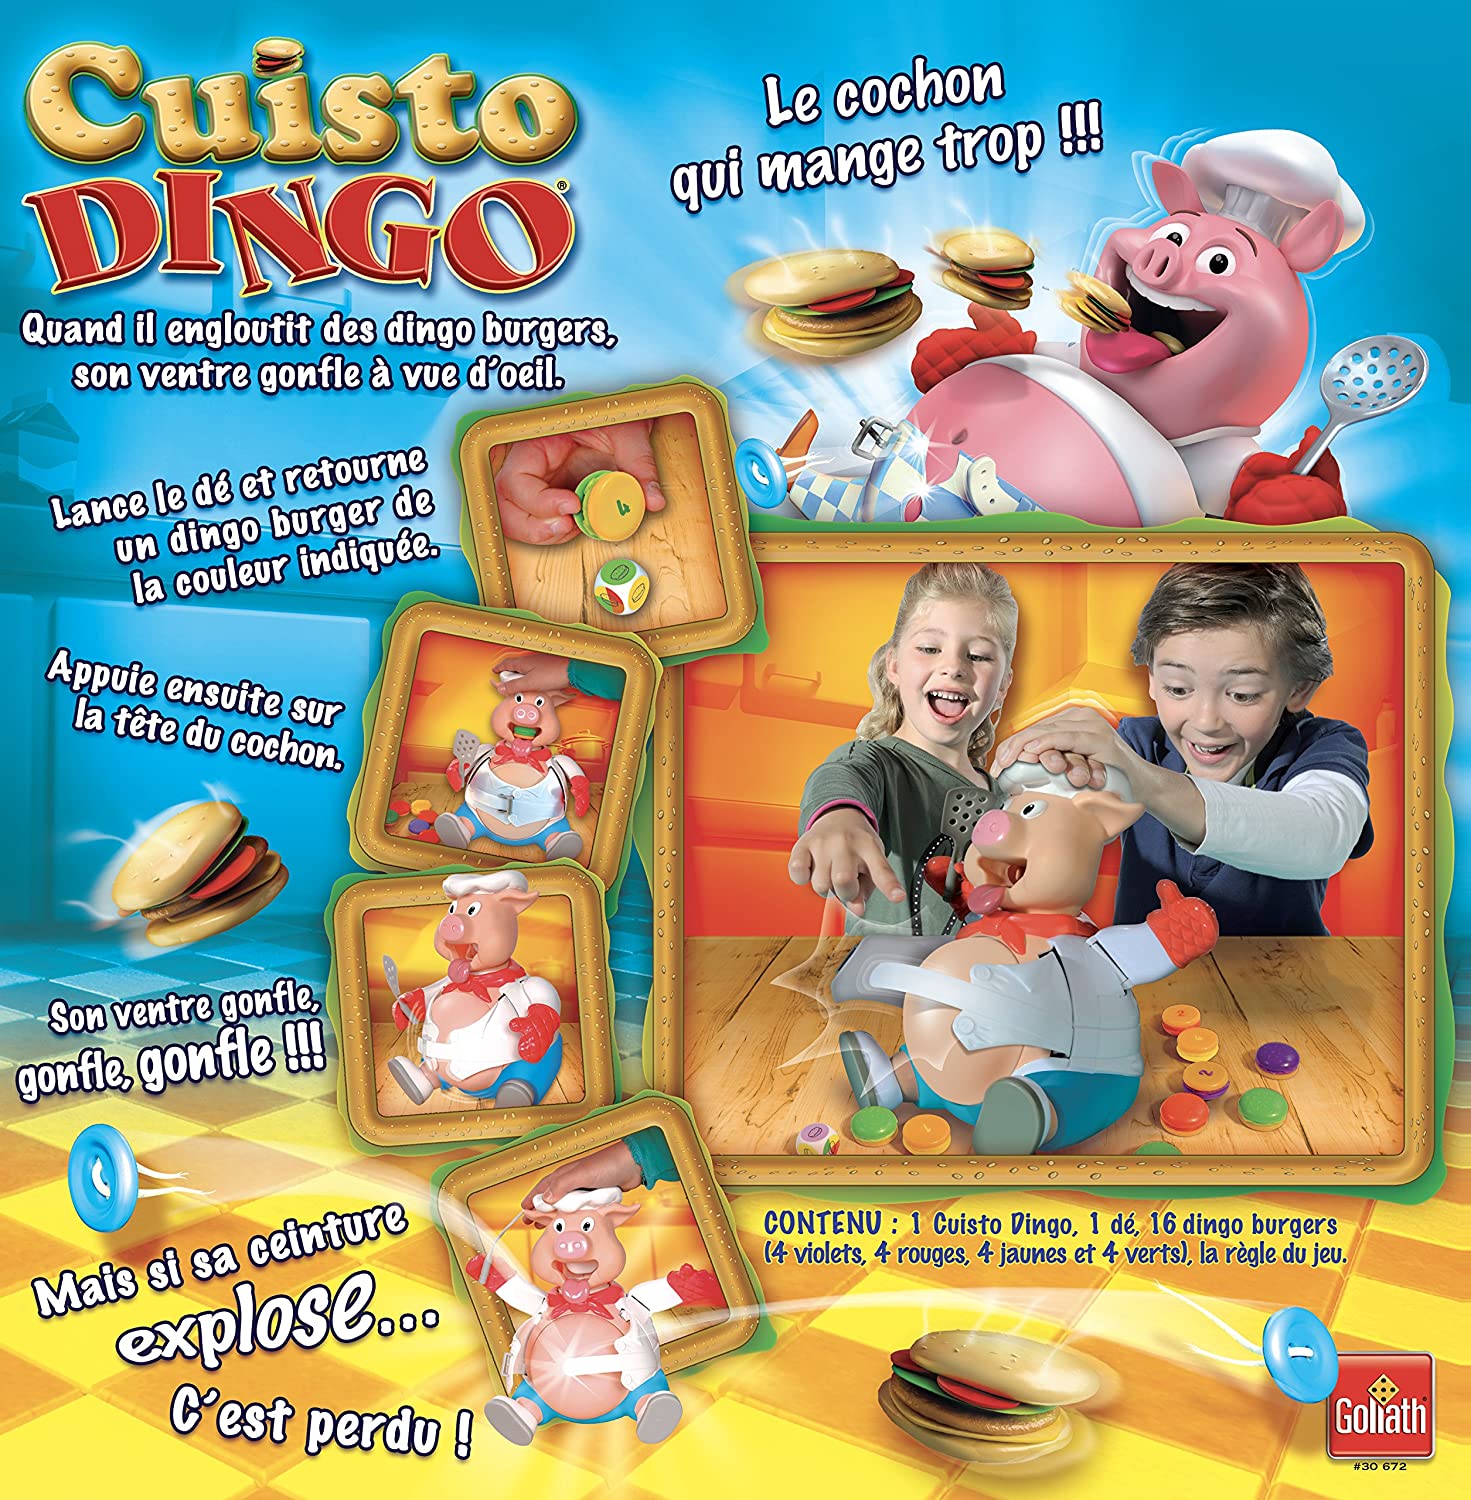 Valisette Multi-Jeux Cuisto Dingo - Jeu de Société Enfants Rigolo 